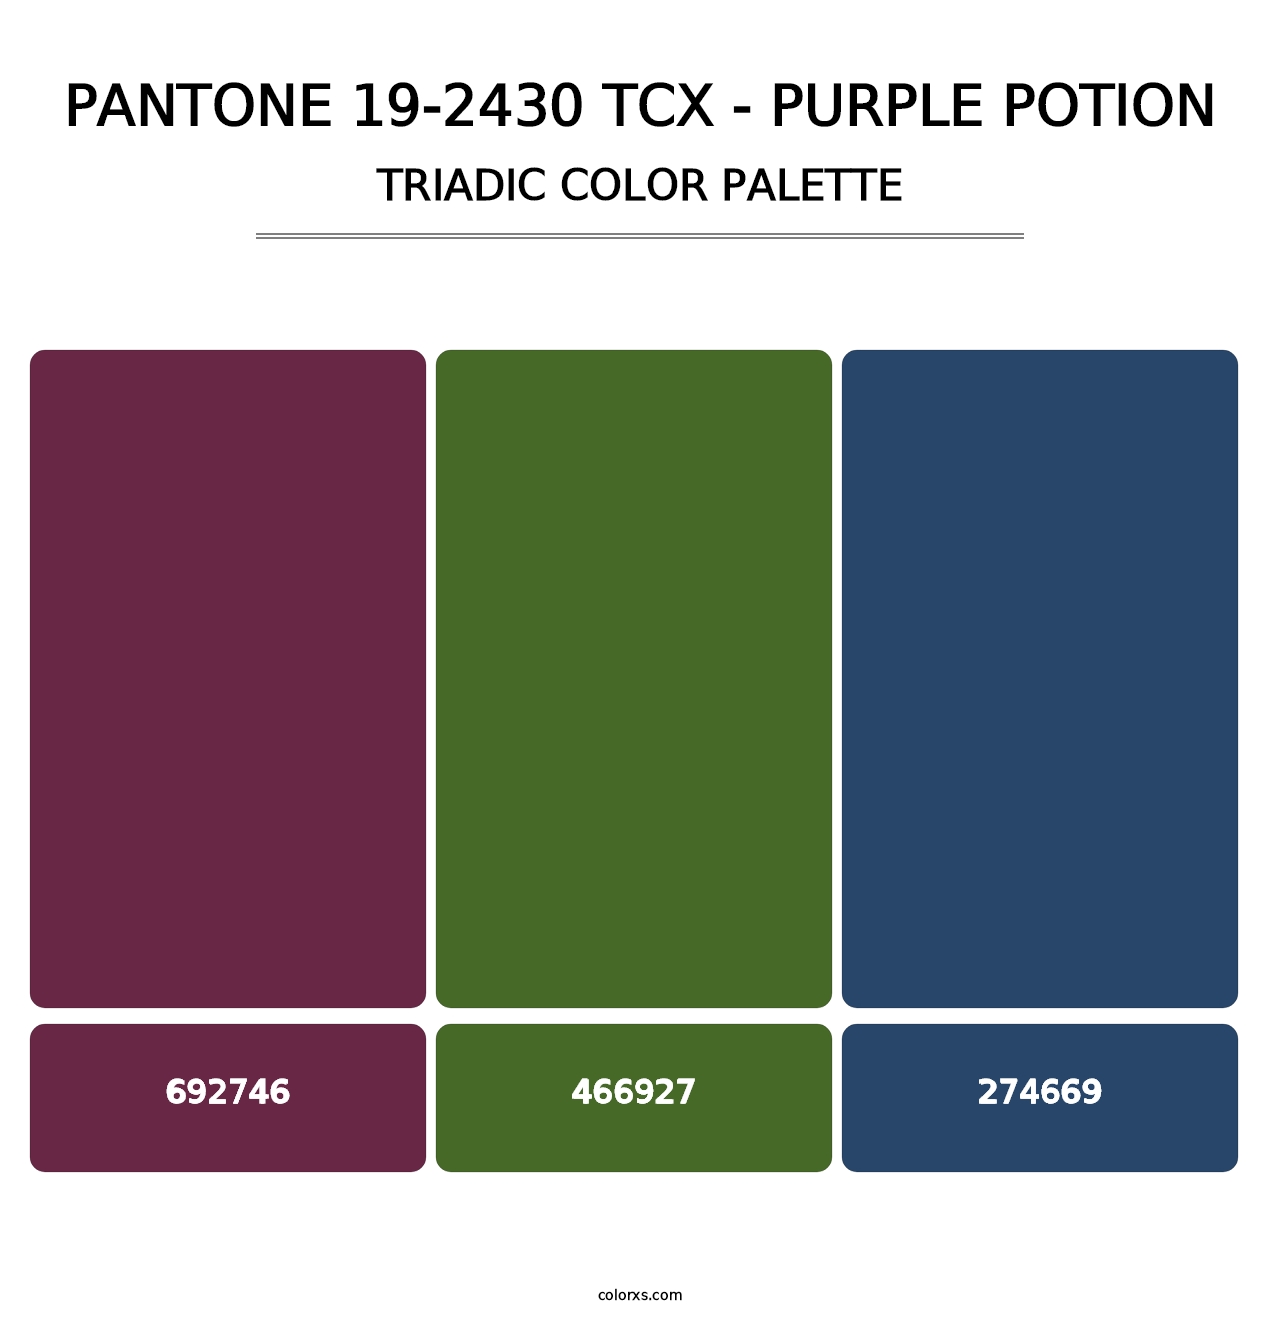 PANTONE 19-2430 TCX - Purple Potion - Triadic Color Palette